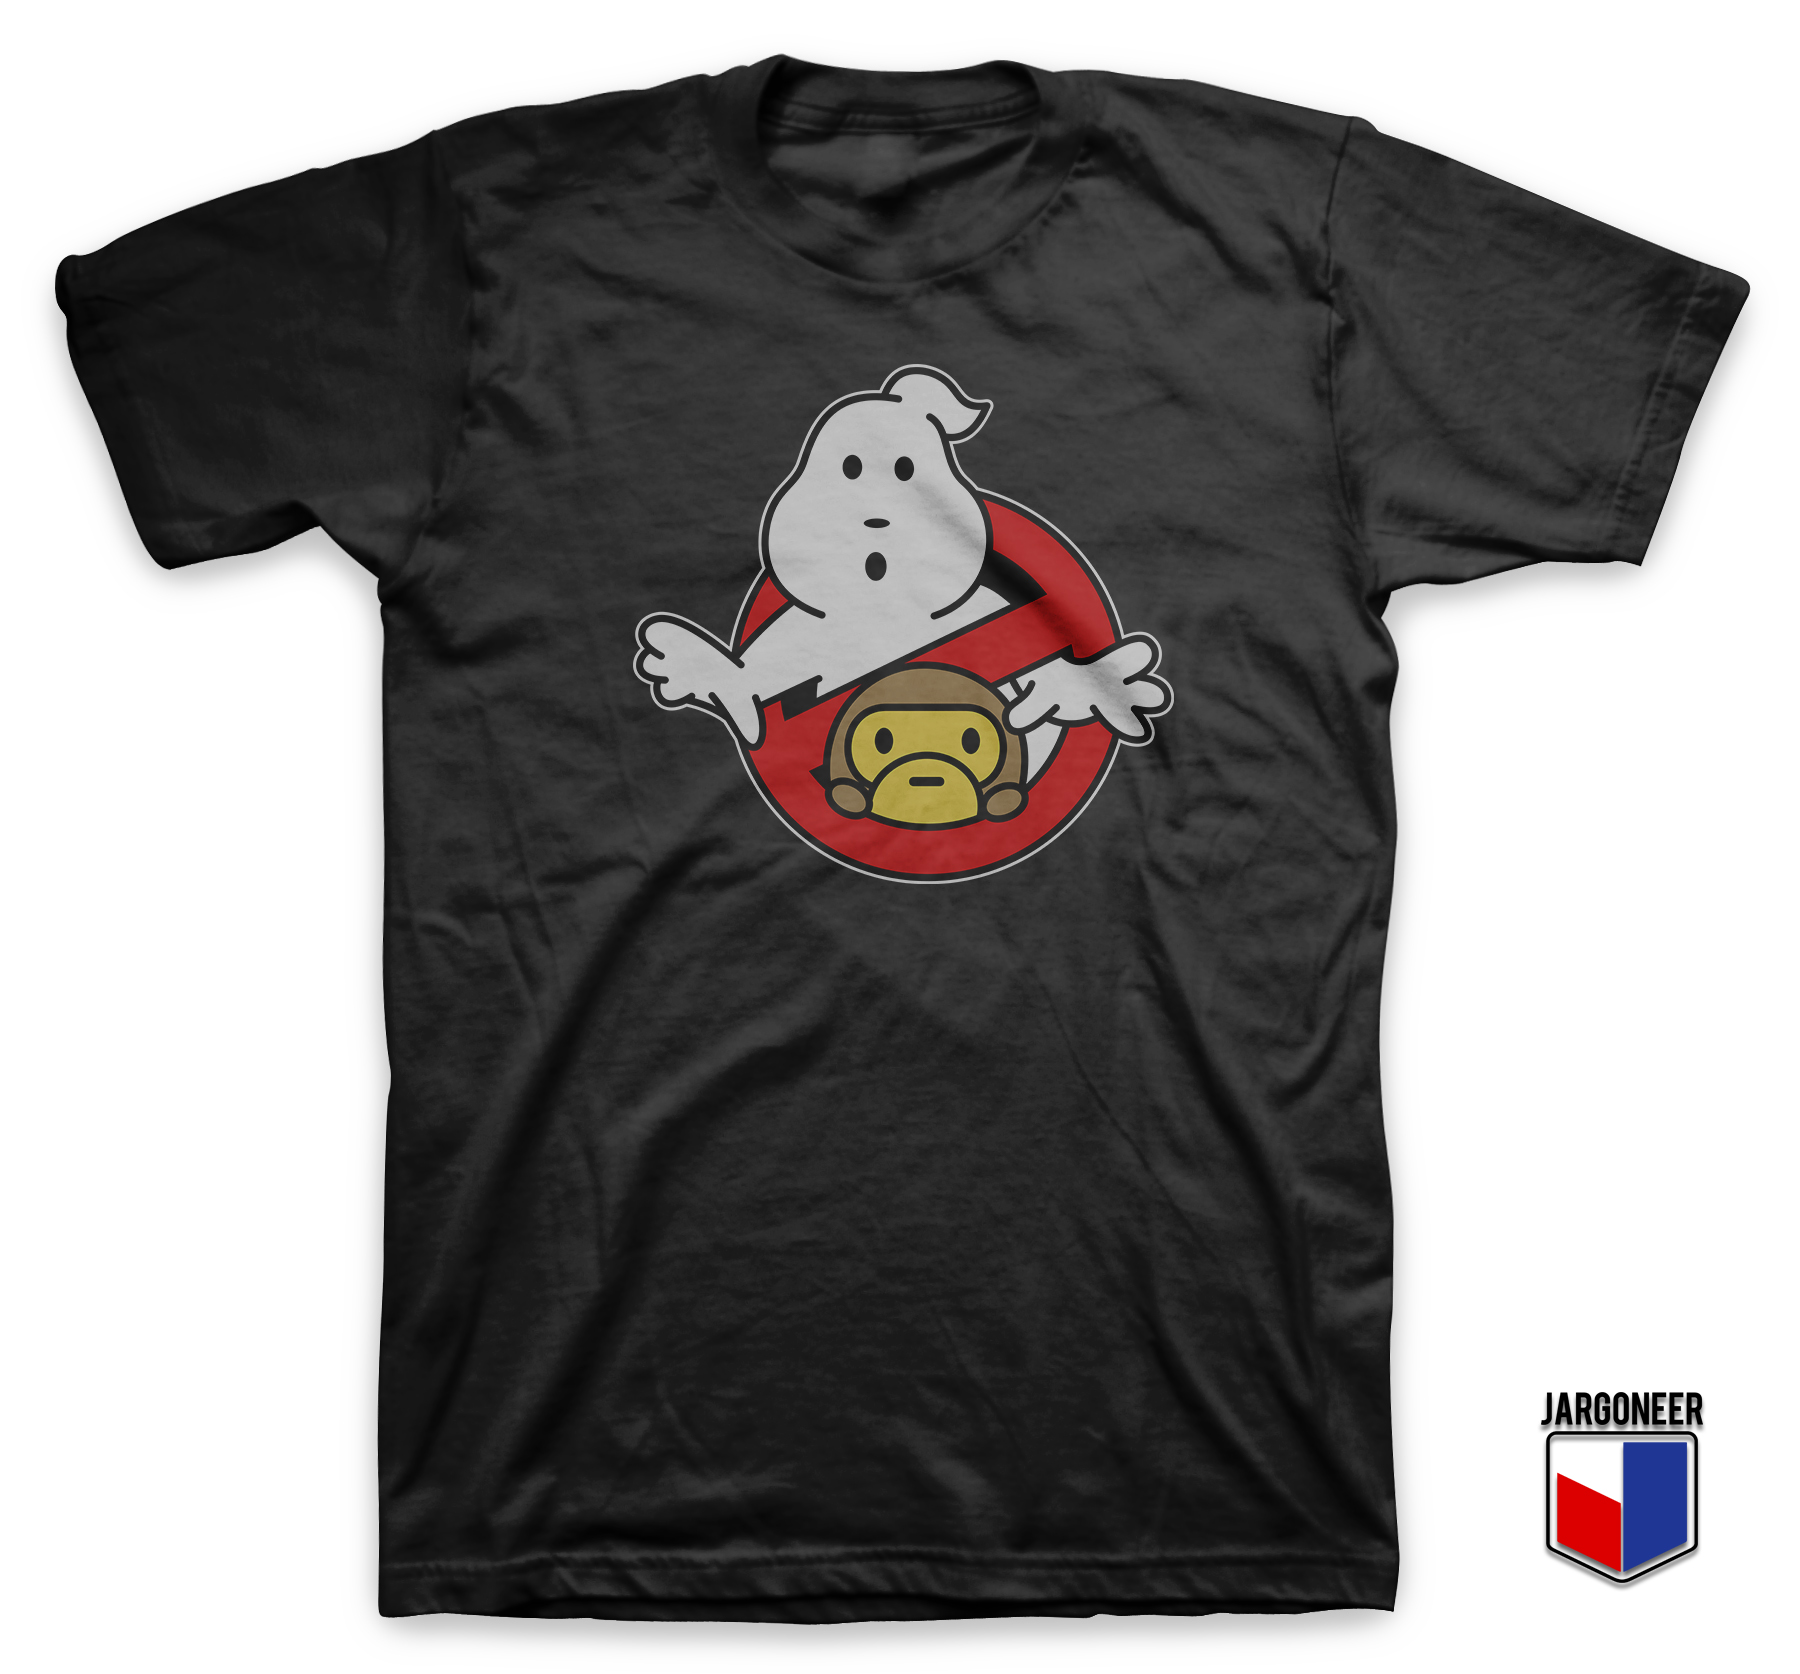 Ghostbape Black T Shirt - Shop Unique Graphic Cool Shirt Designs